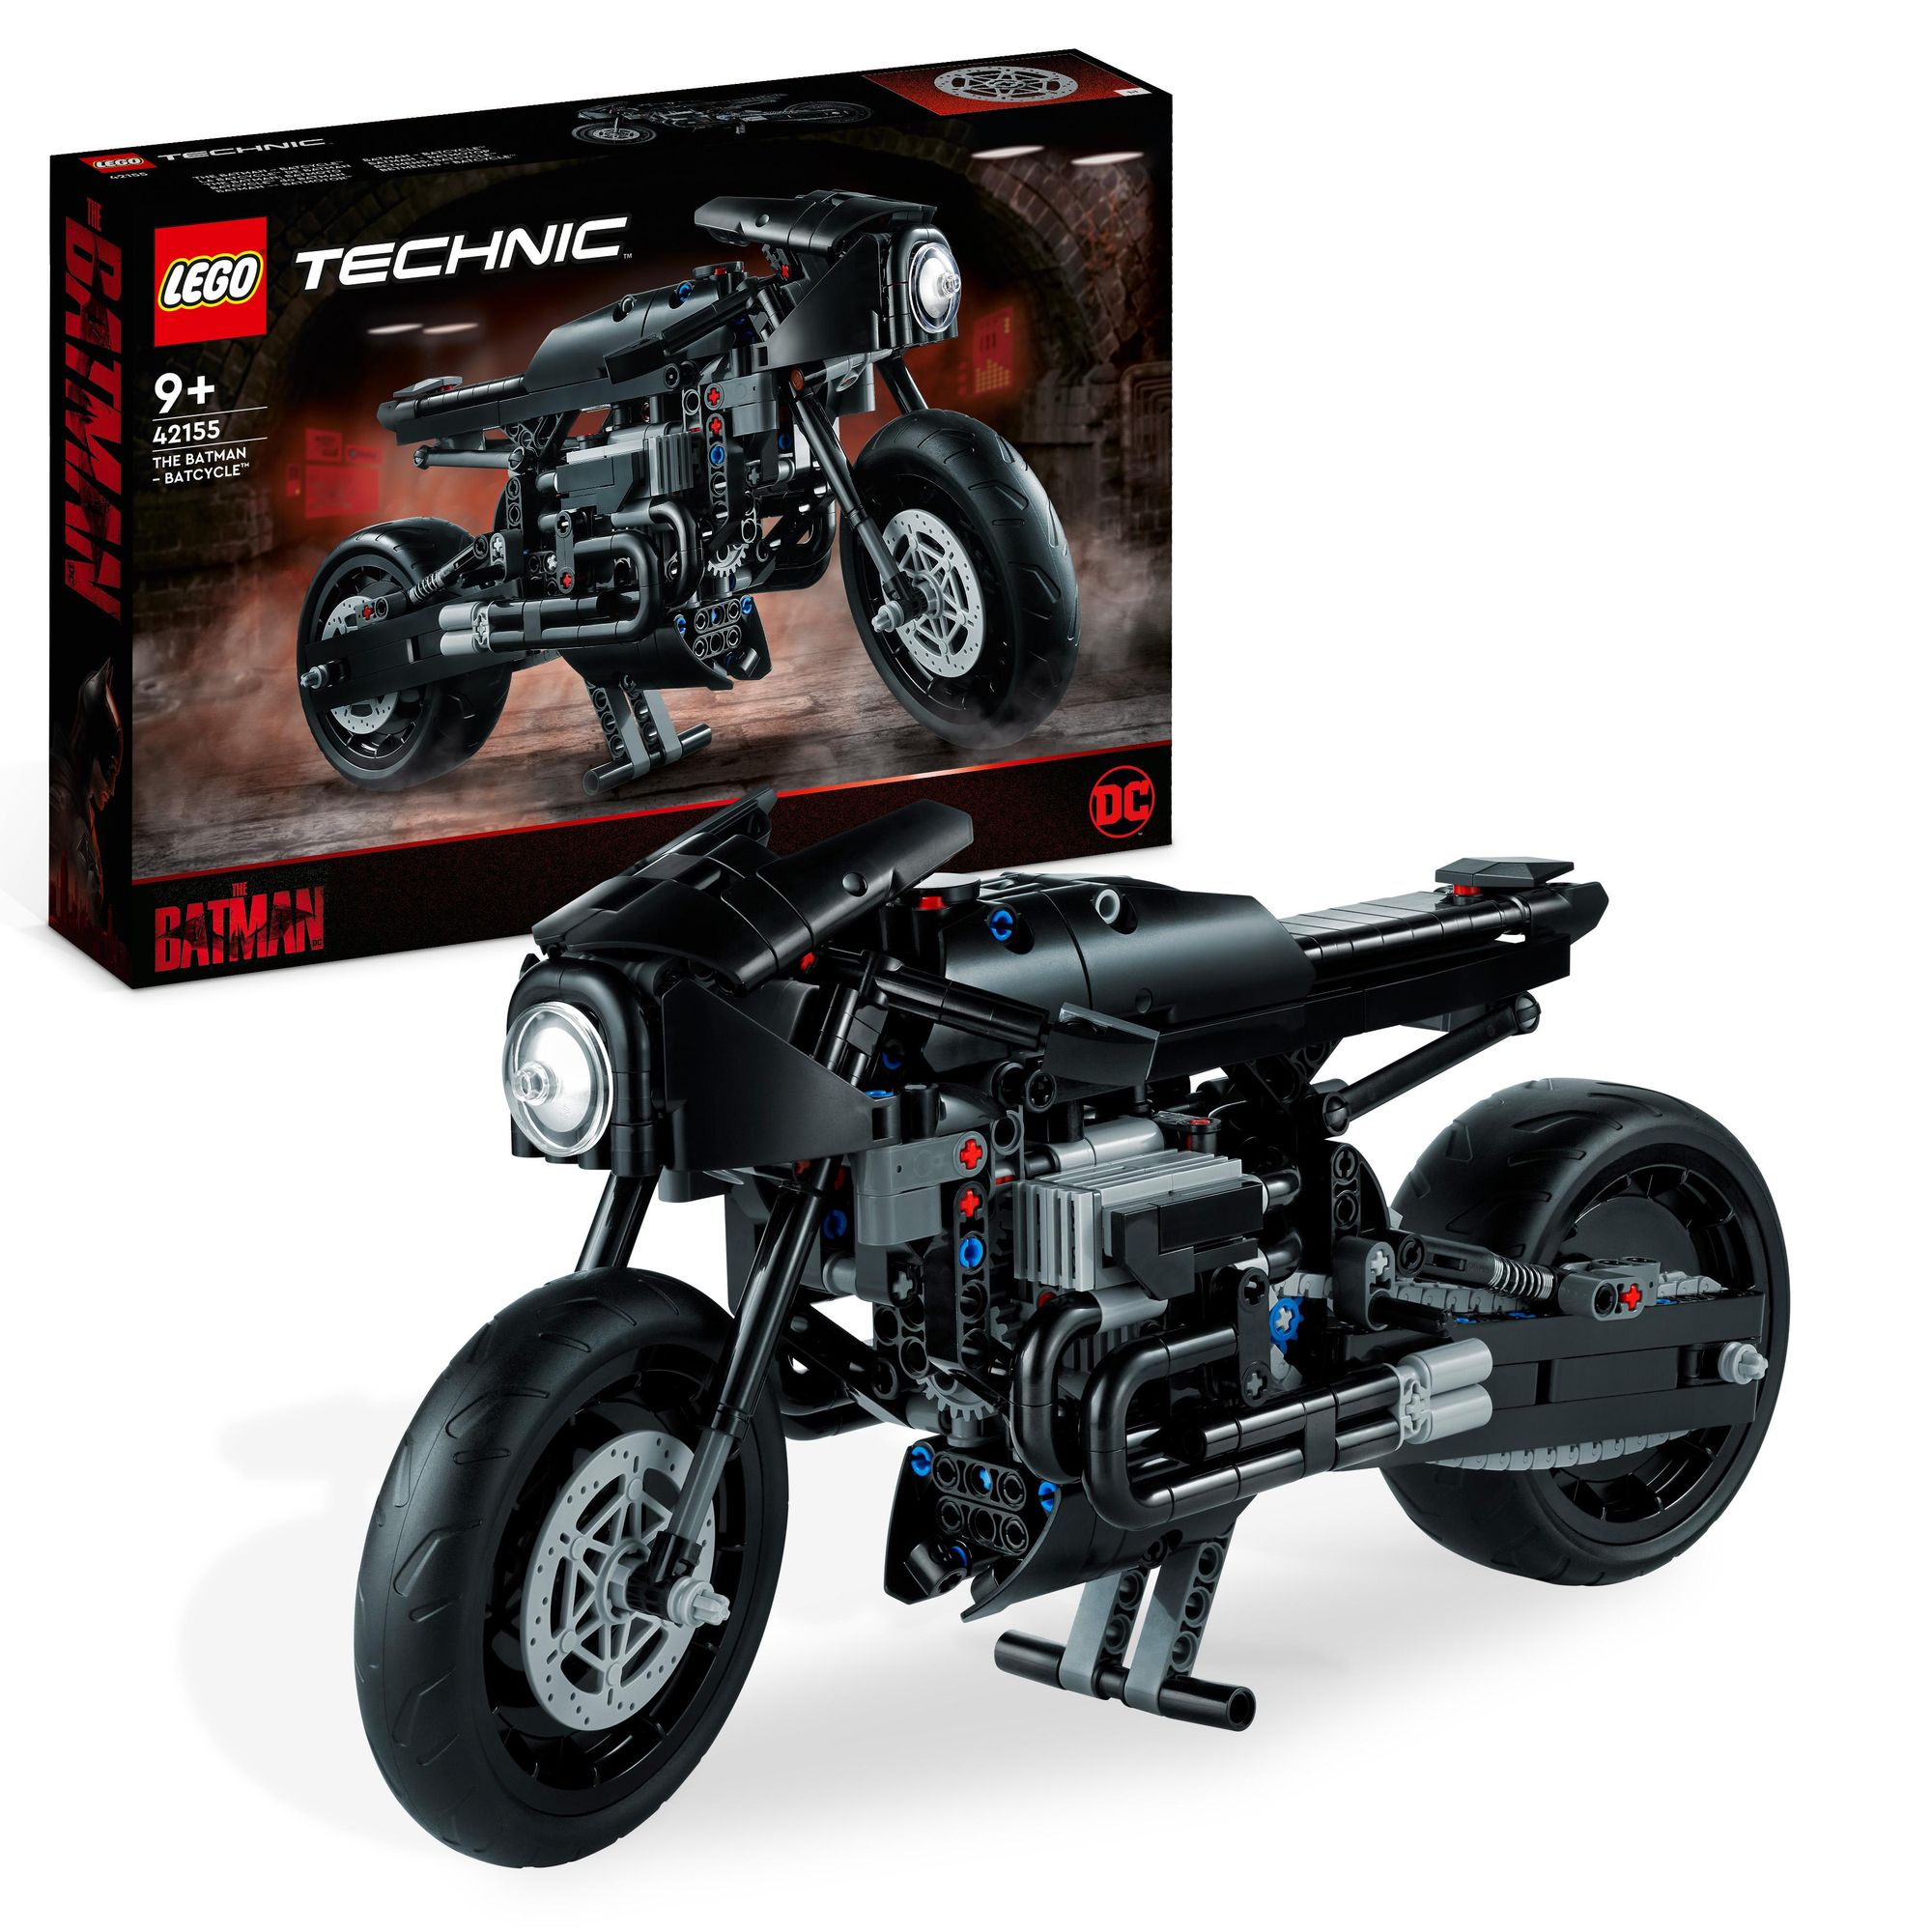 https://images.thalia.media/-/BF2000-2000/089817c901ba48438687ebd08a40d3e8/lego-technic-42155-the-batman-batcycle-set-motorrad-modellbausatz.jpeg